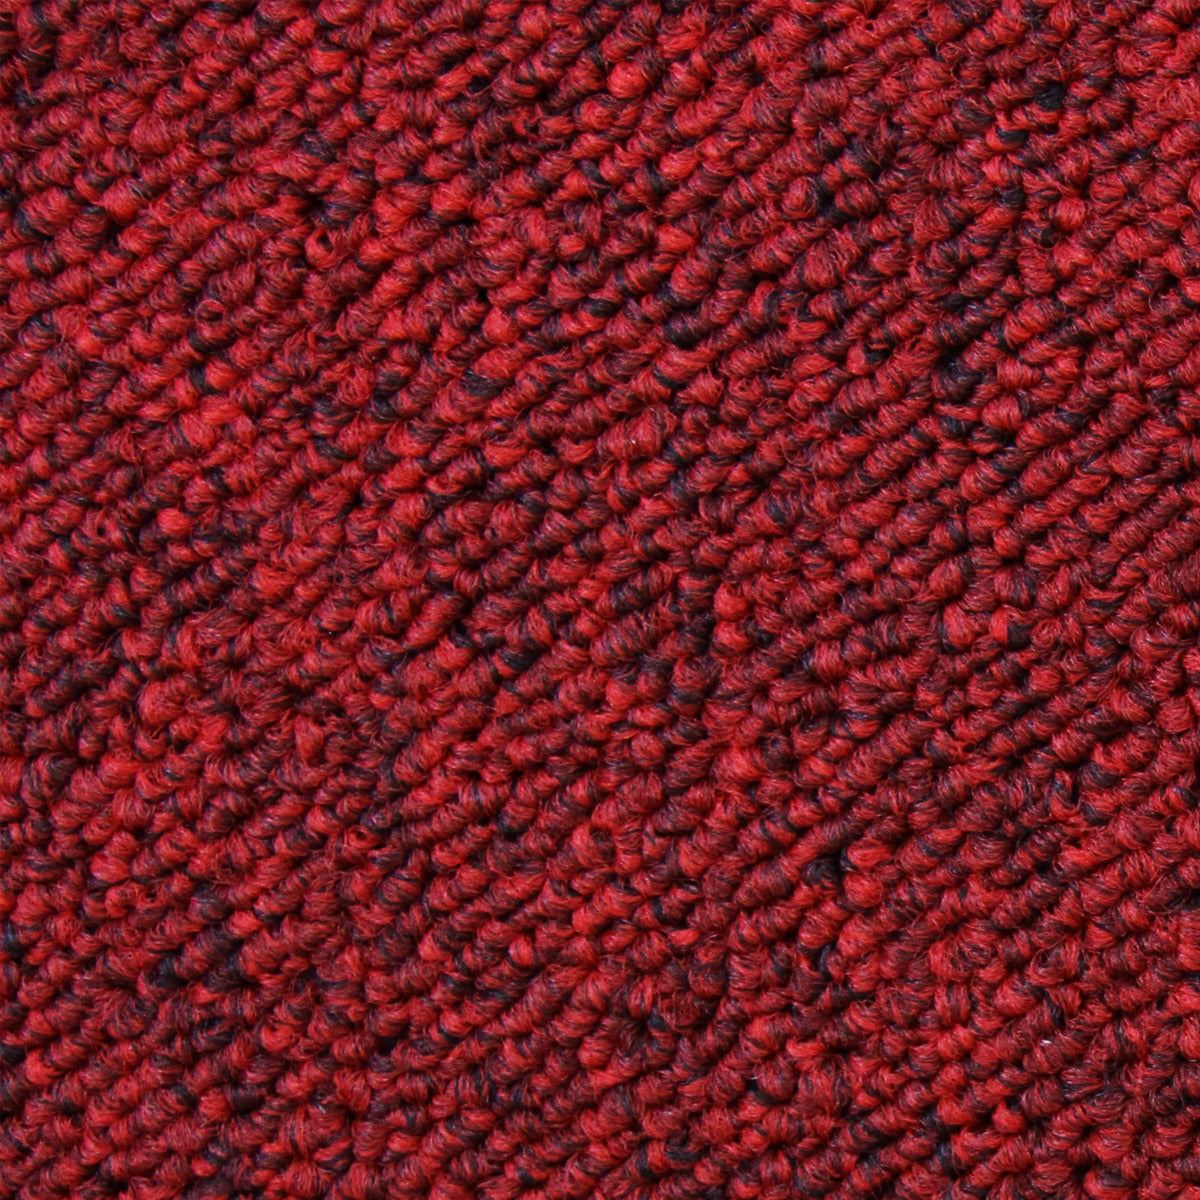 20 x Carpet Tiles 5m2 / Scarlet Red